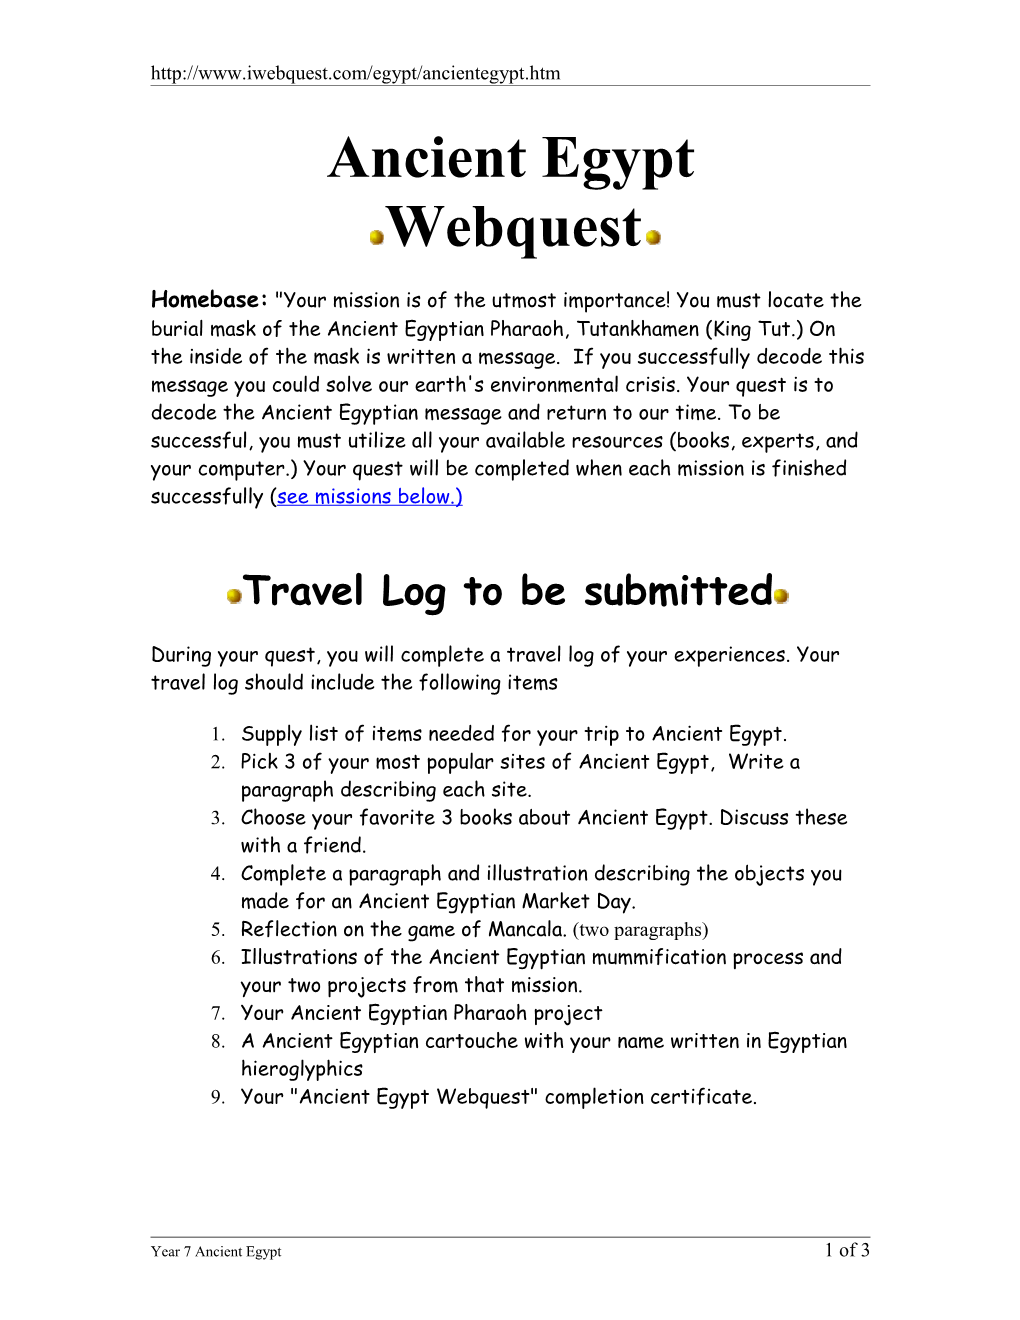 Ancient Egypt Webquest